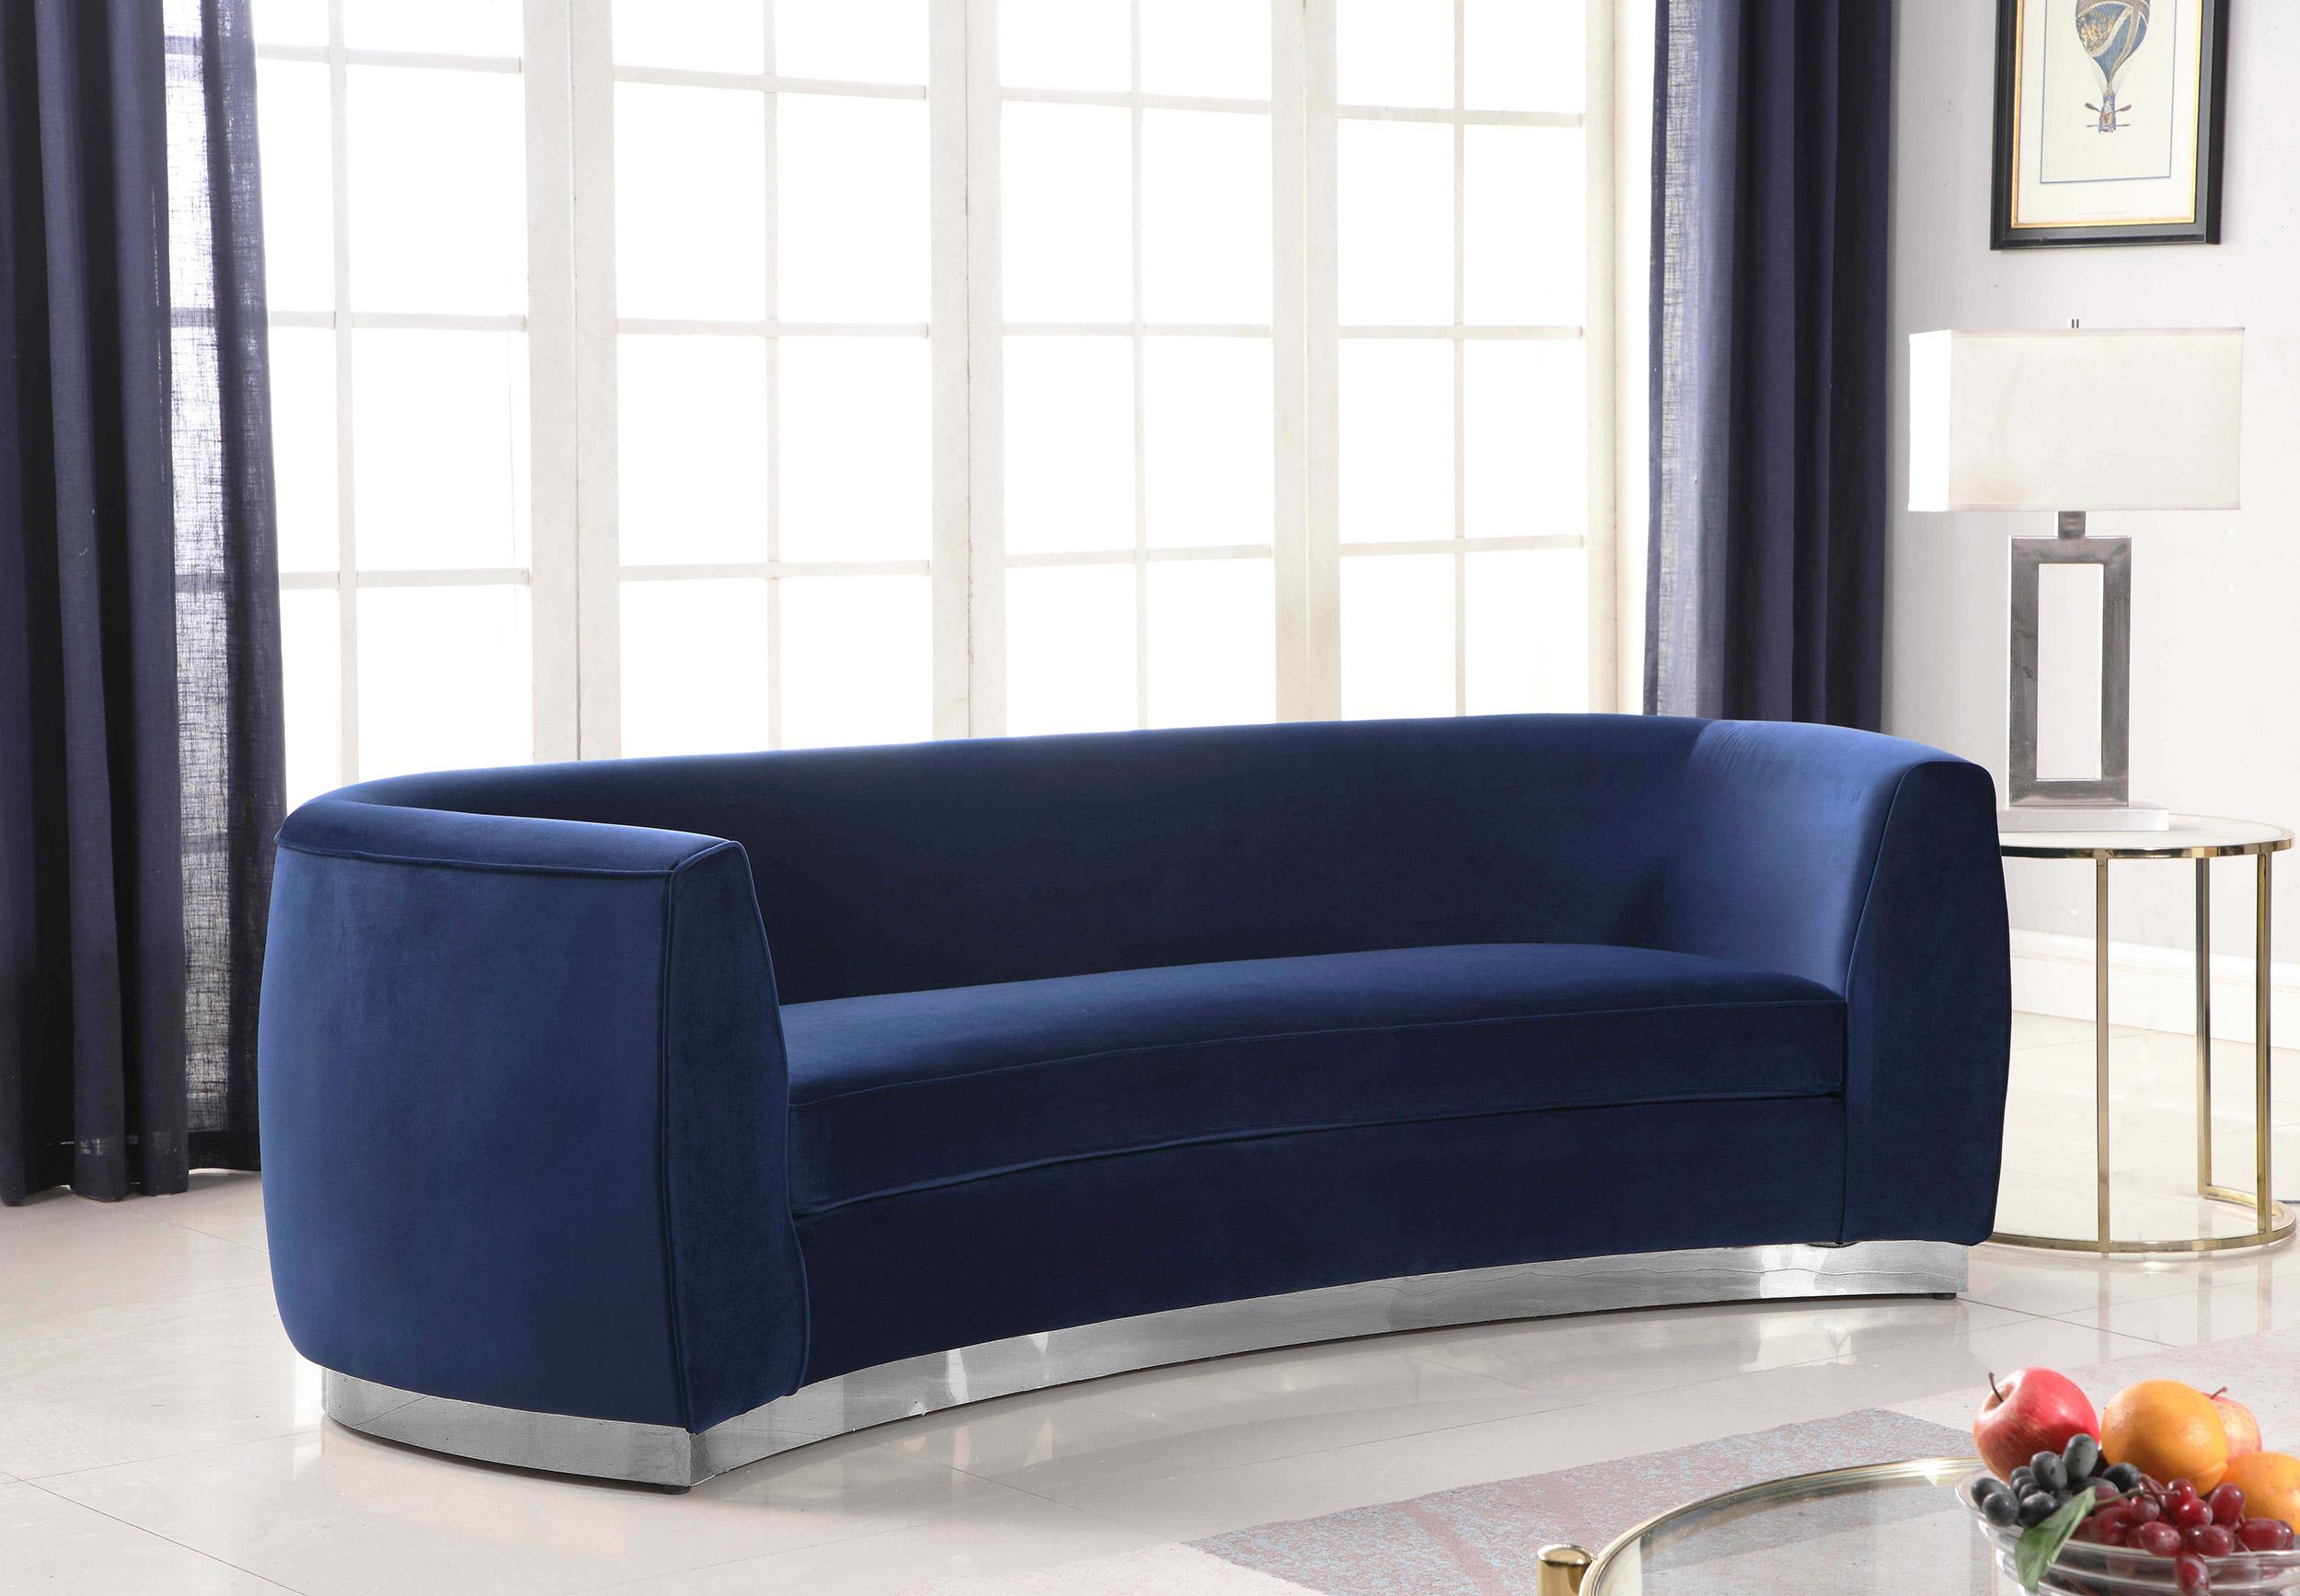 

    
Glam Navy Velvet Curved Back Sofa Julian 621Navy-S Meridian Modern Contemporary
